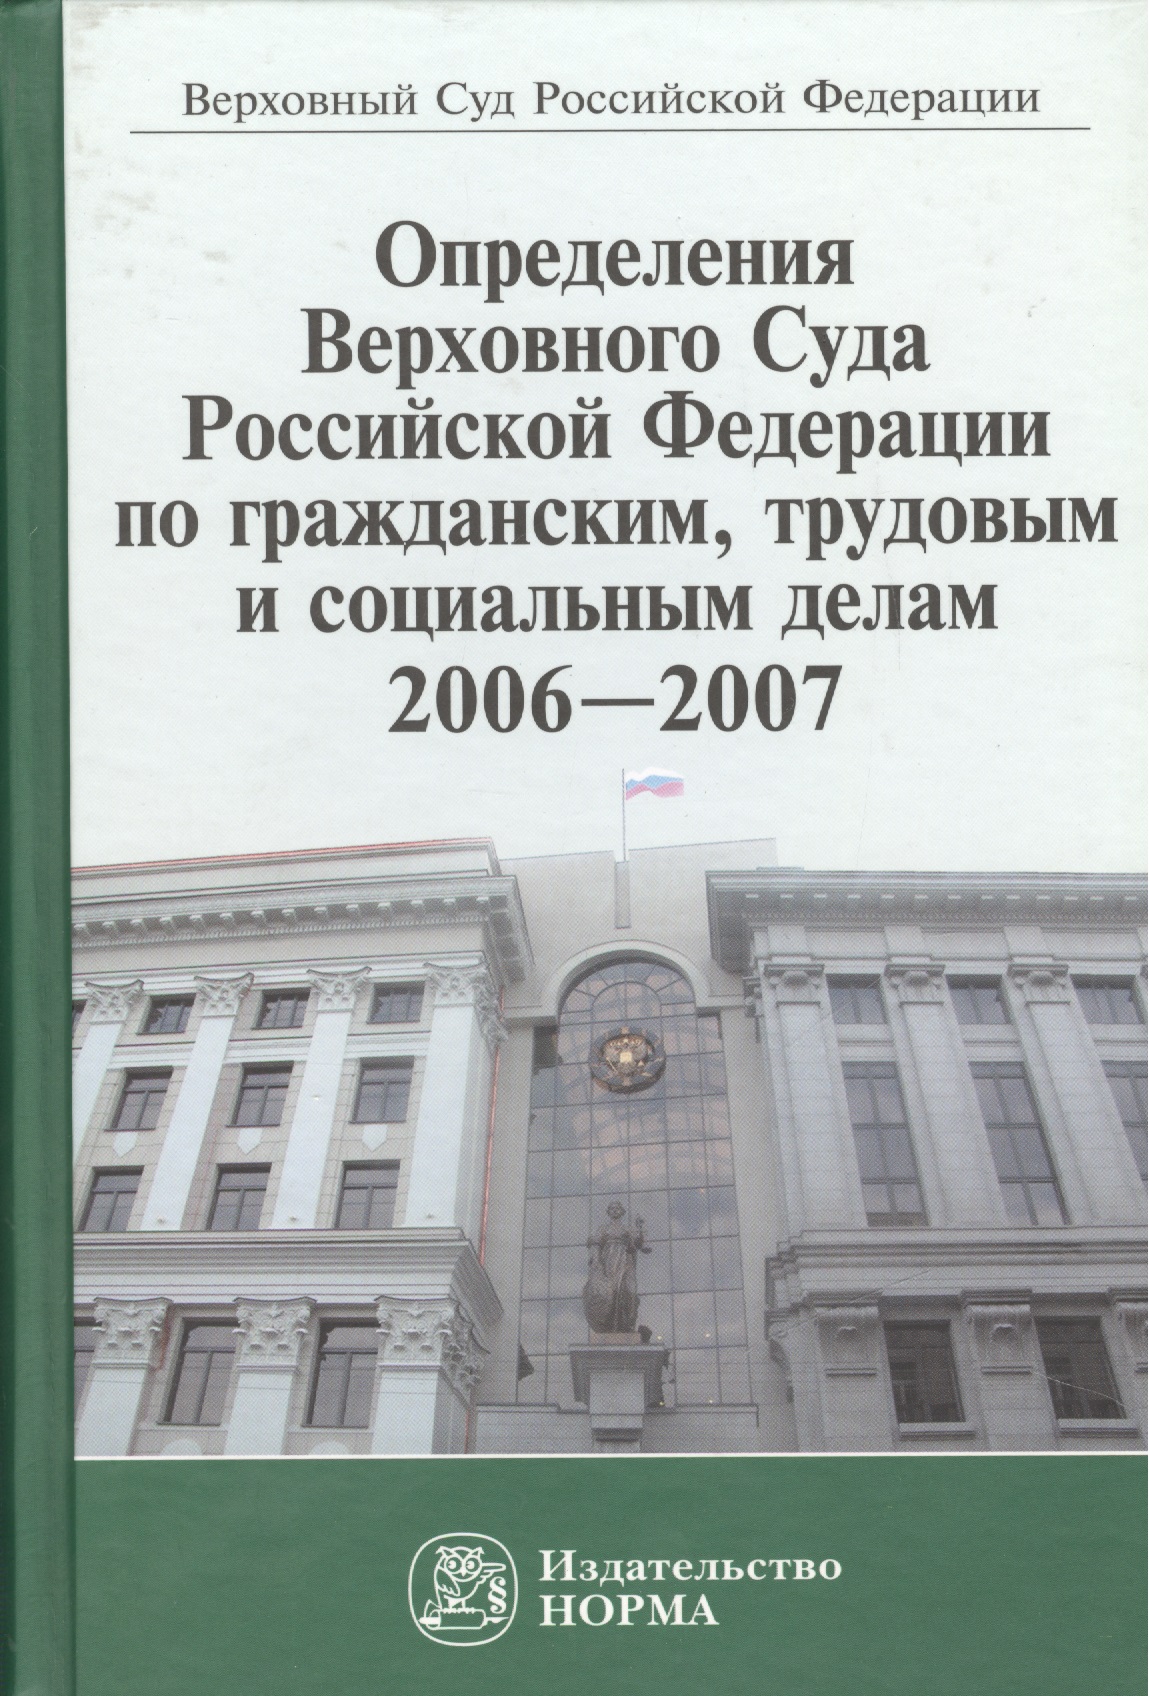       ,     2006-2007